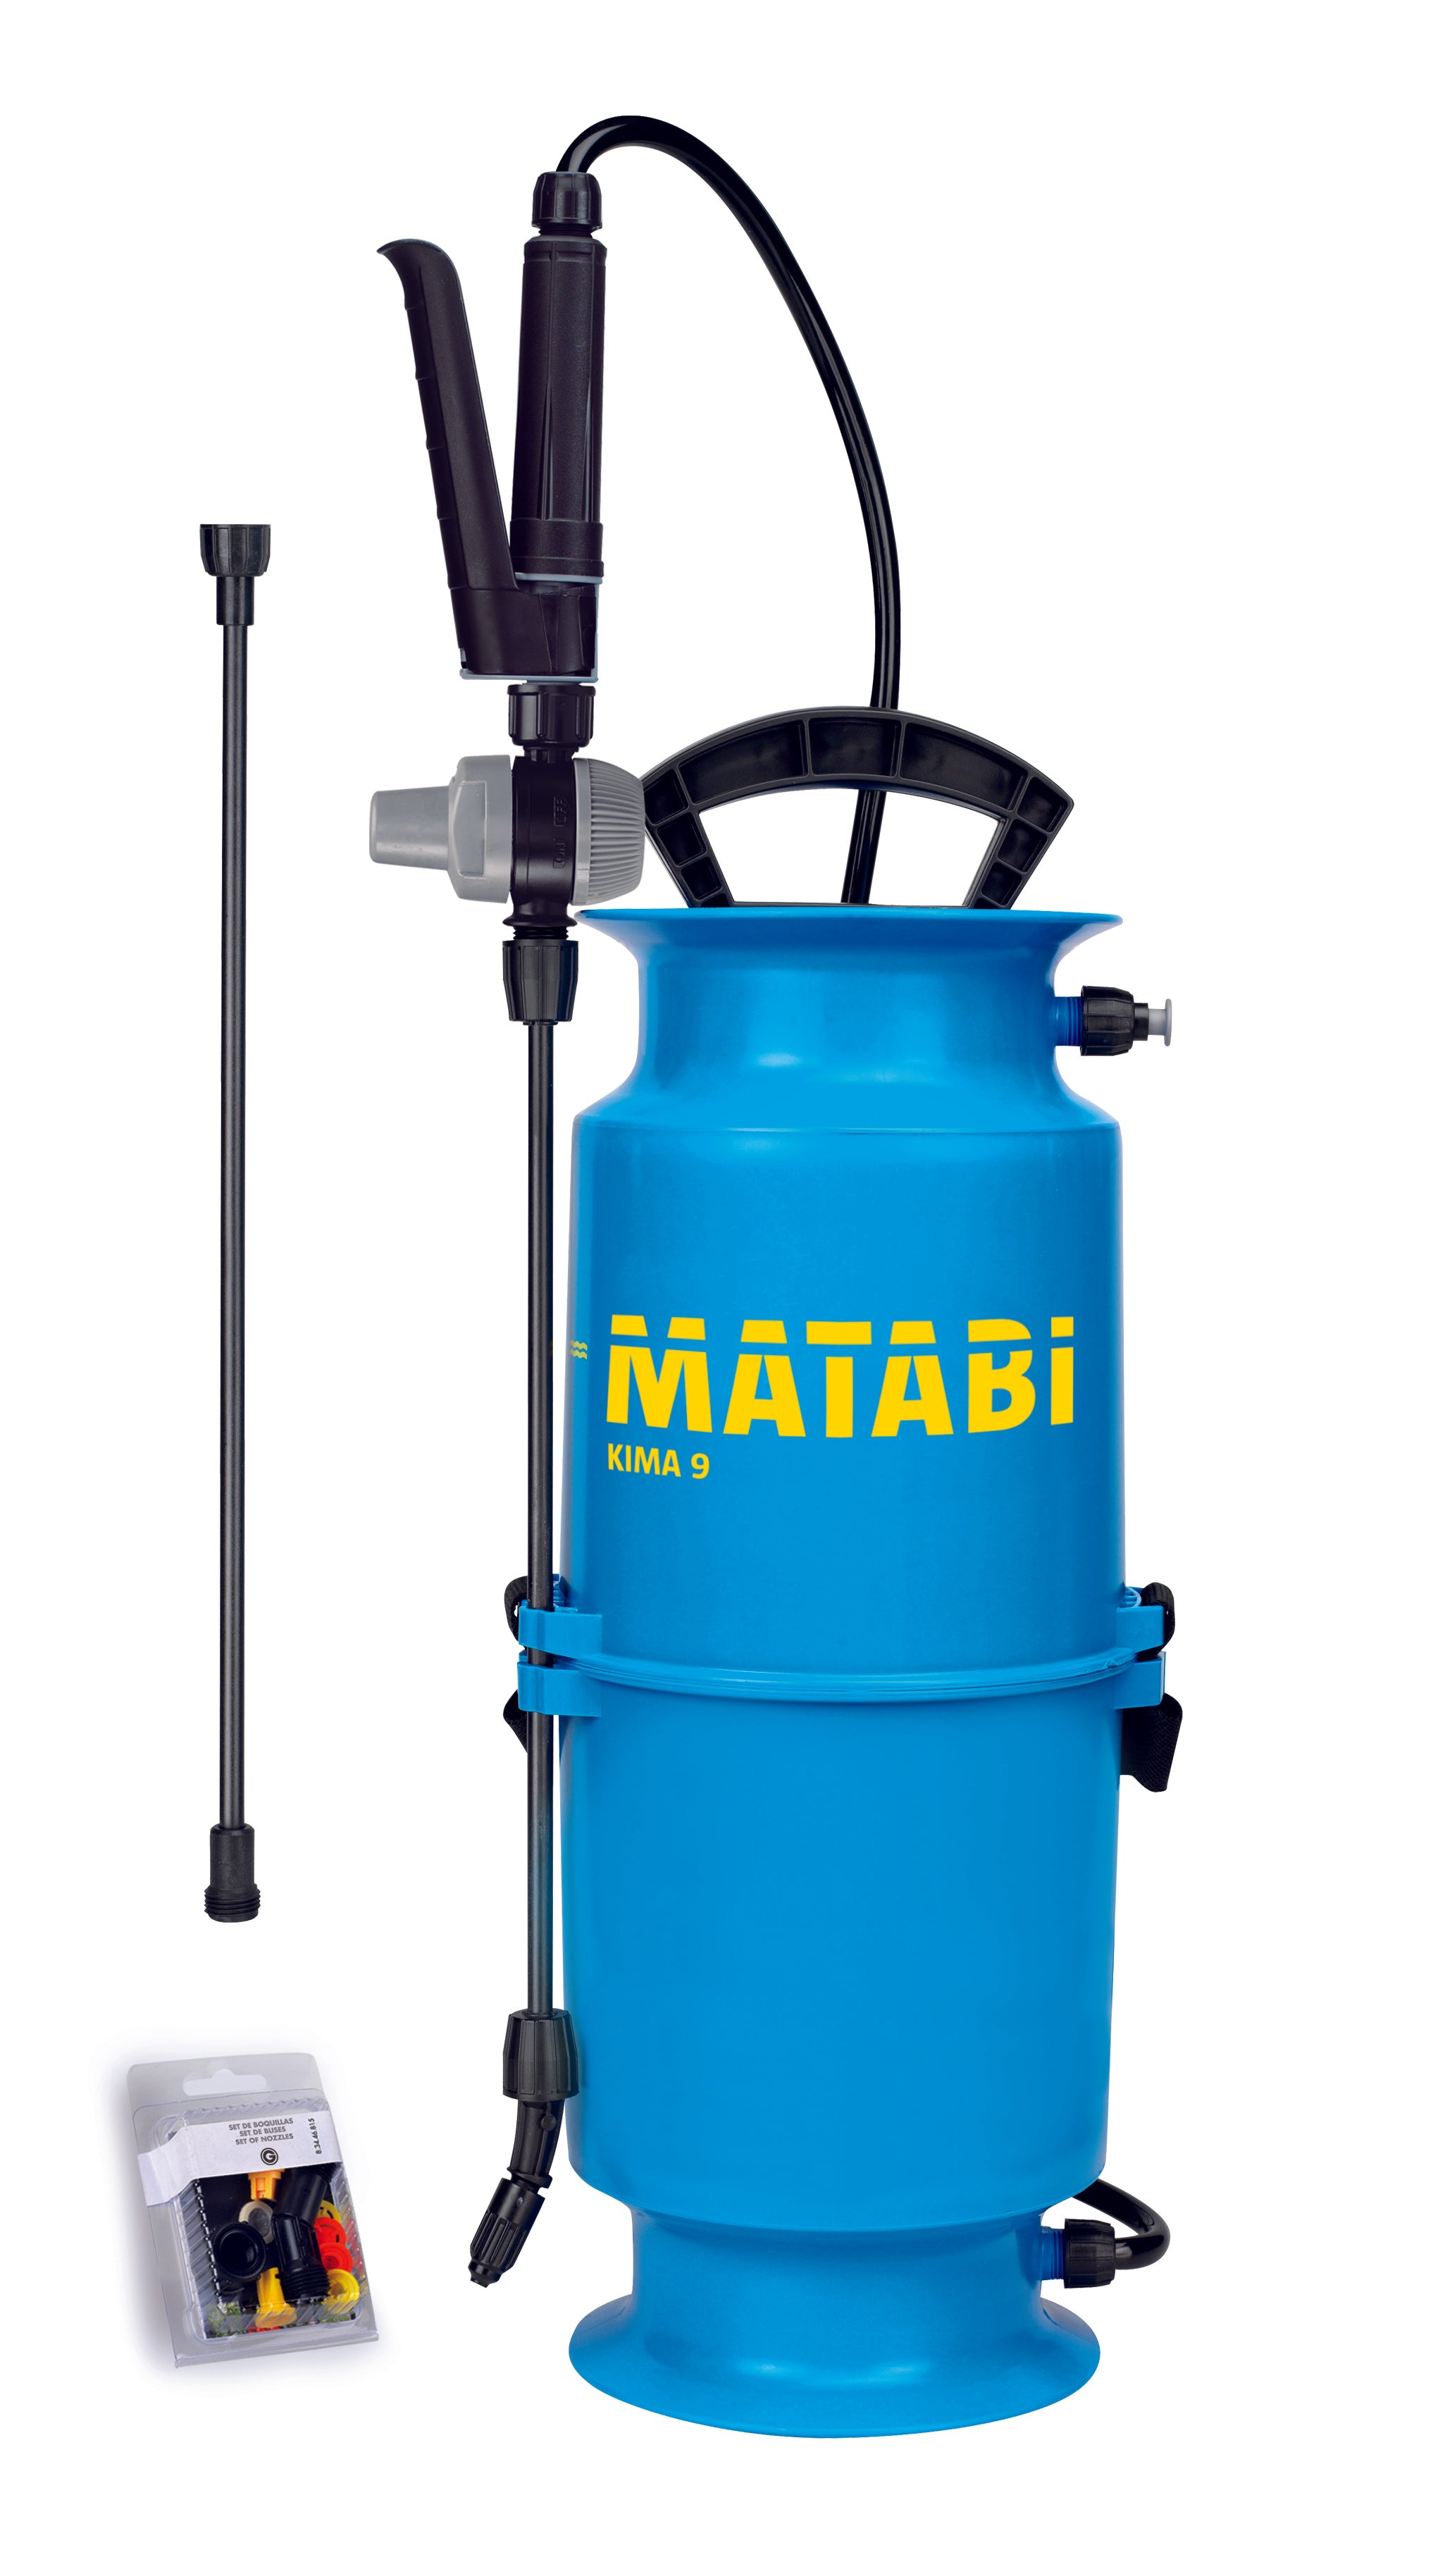 Matabi Pressure Sprayer - Kima 9